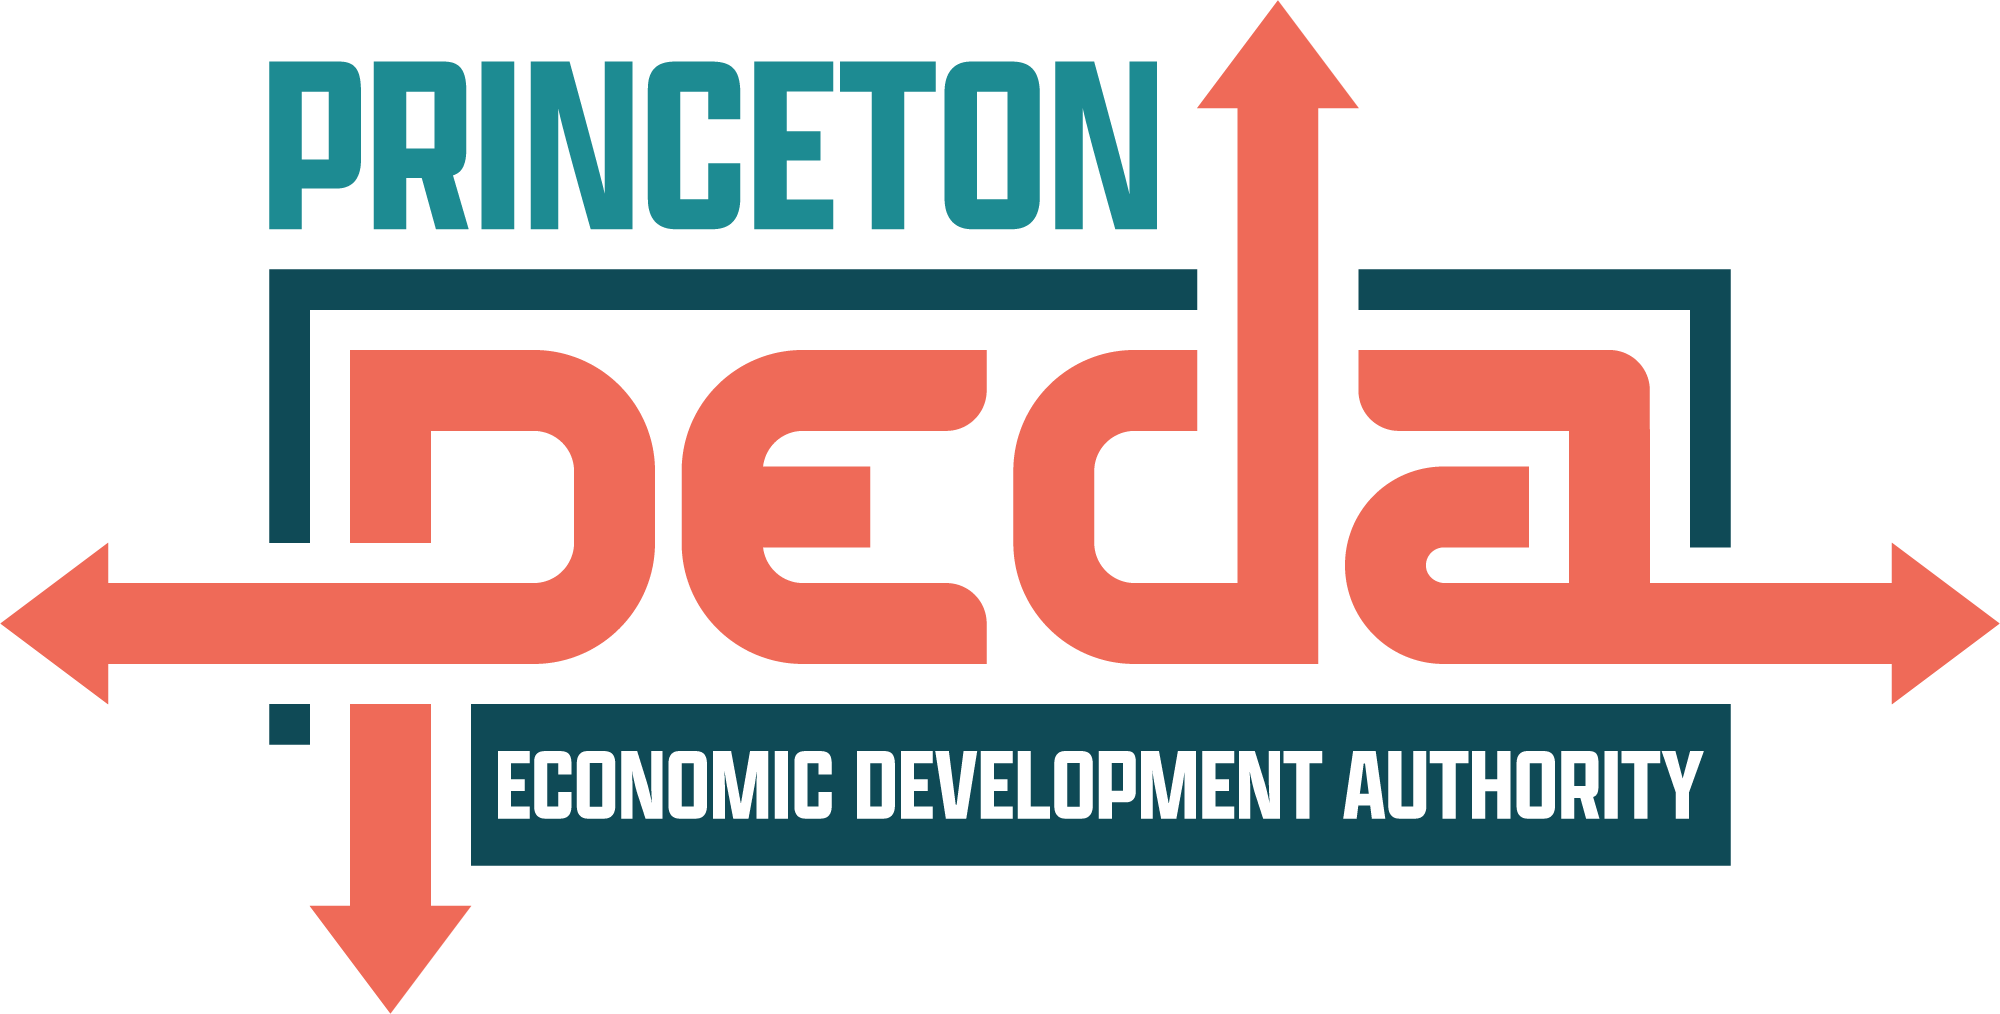 Princeton Economic Development Authority